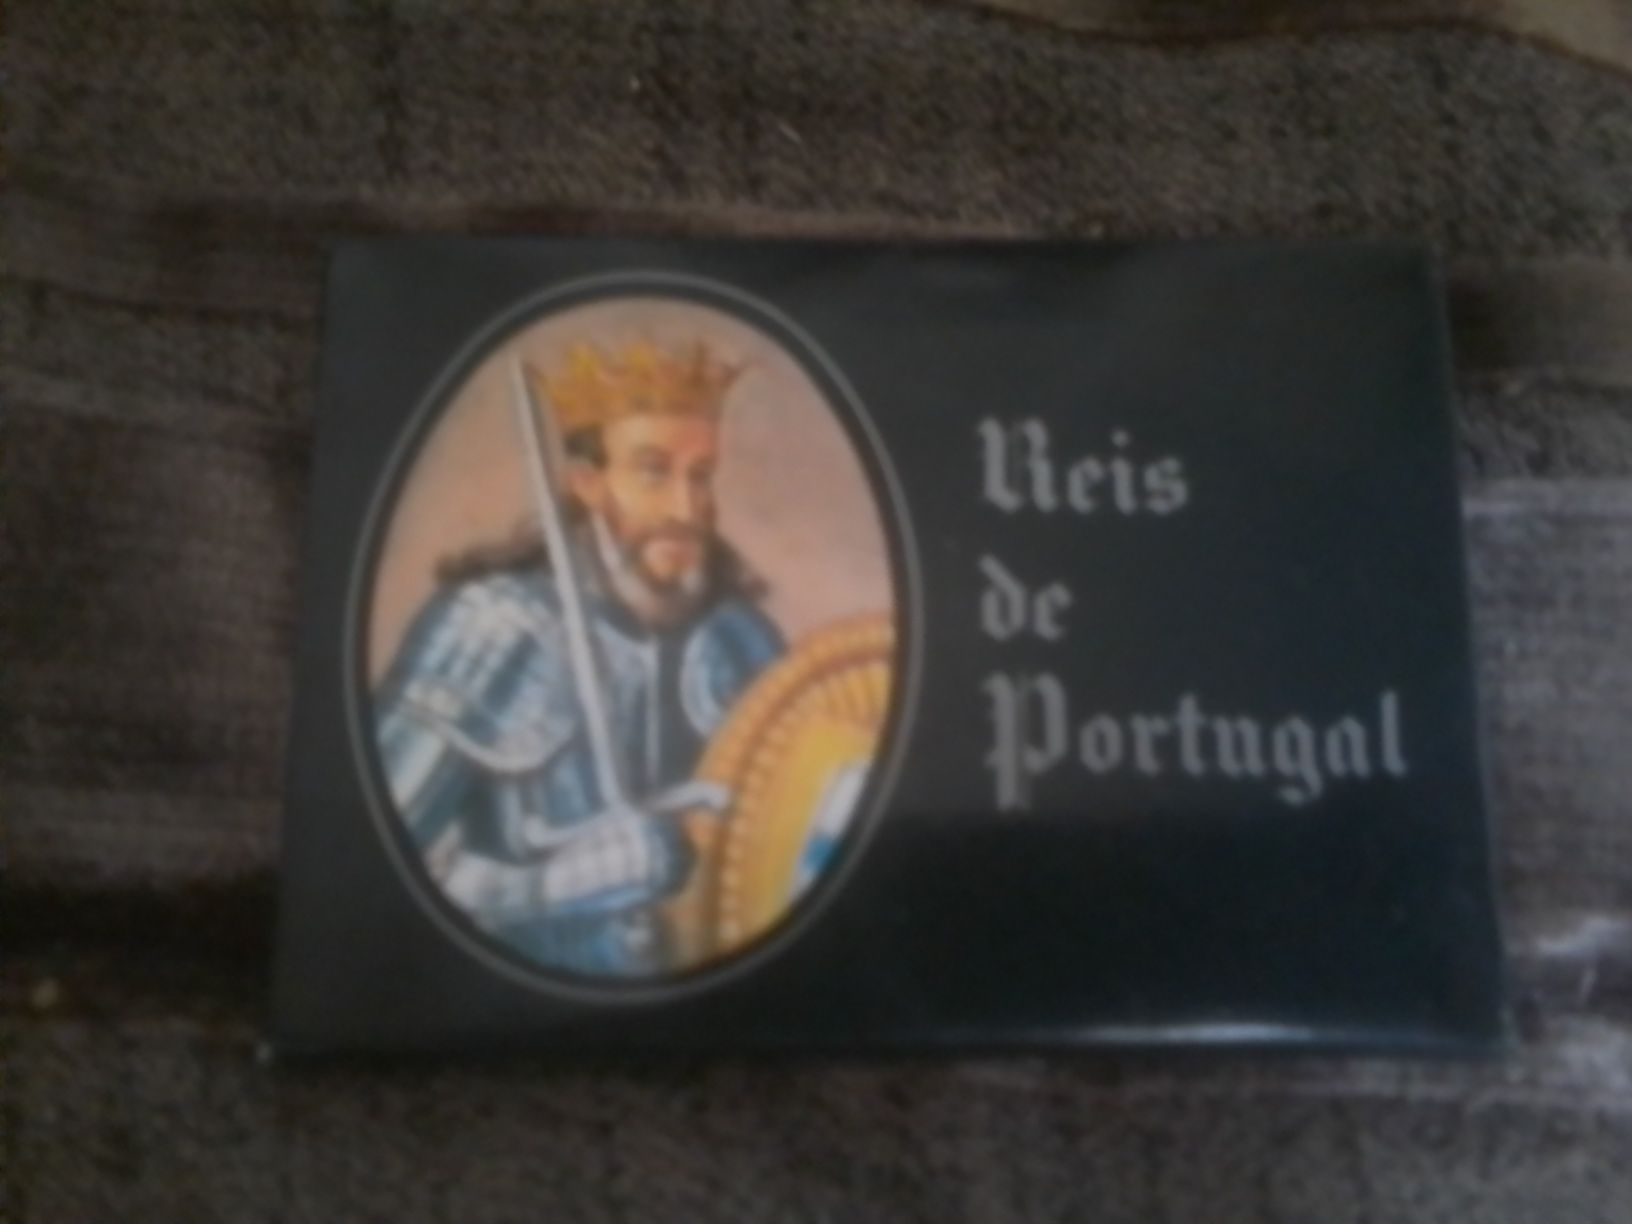 Baralho de cartas Reis de Portugal bom estado só 3€